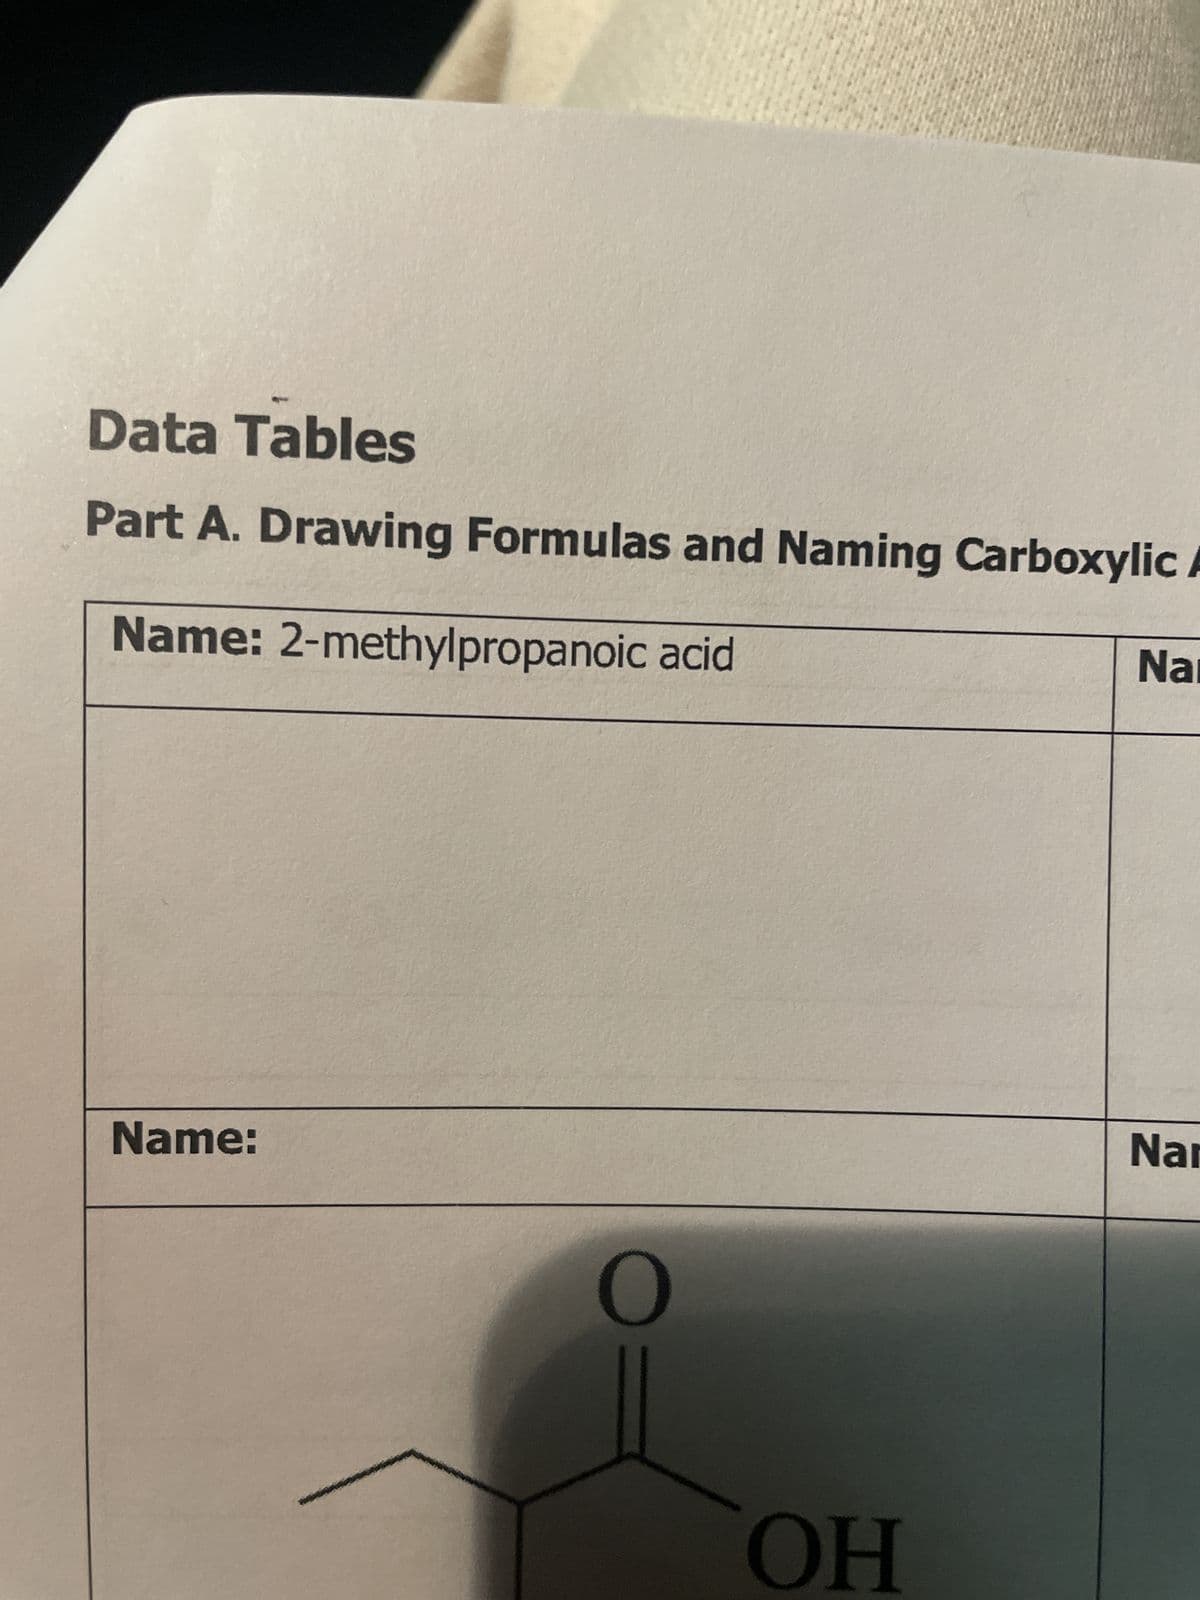 Data Tables
Part A. Drawing Formulas and Naming Carboxylic A
Name: 2-methylpropanoic acid
Name:
O
=
OH
Na
Nar